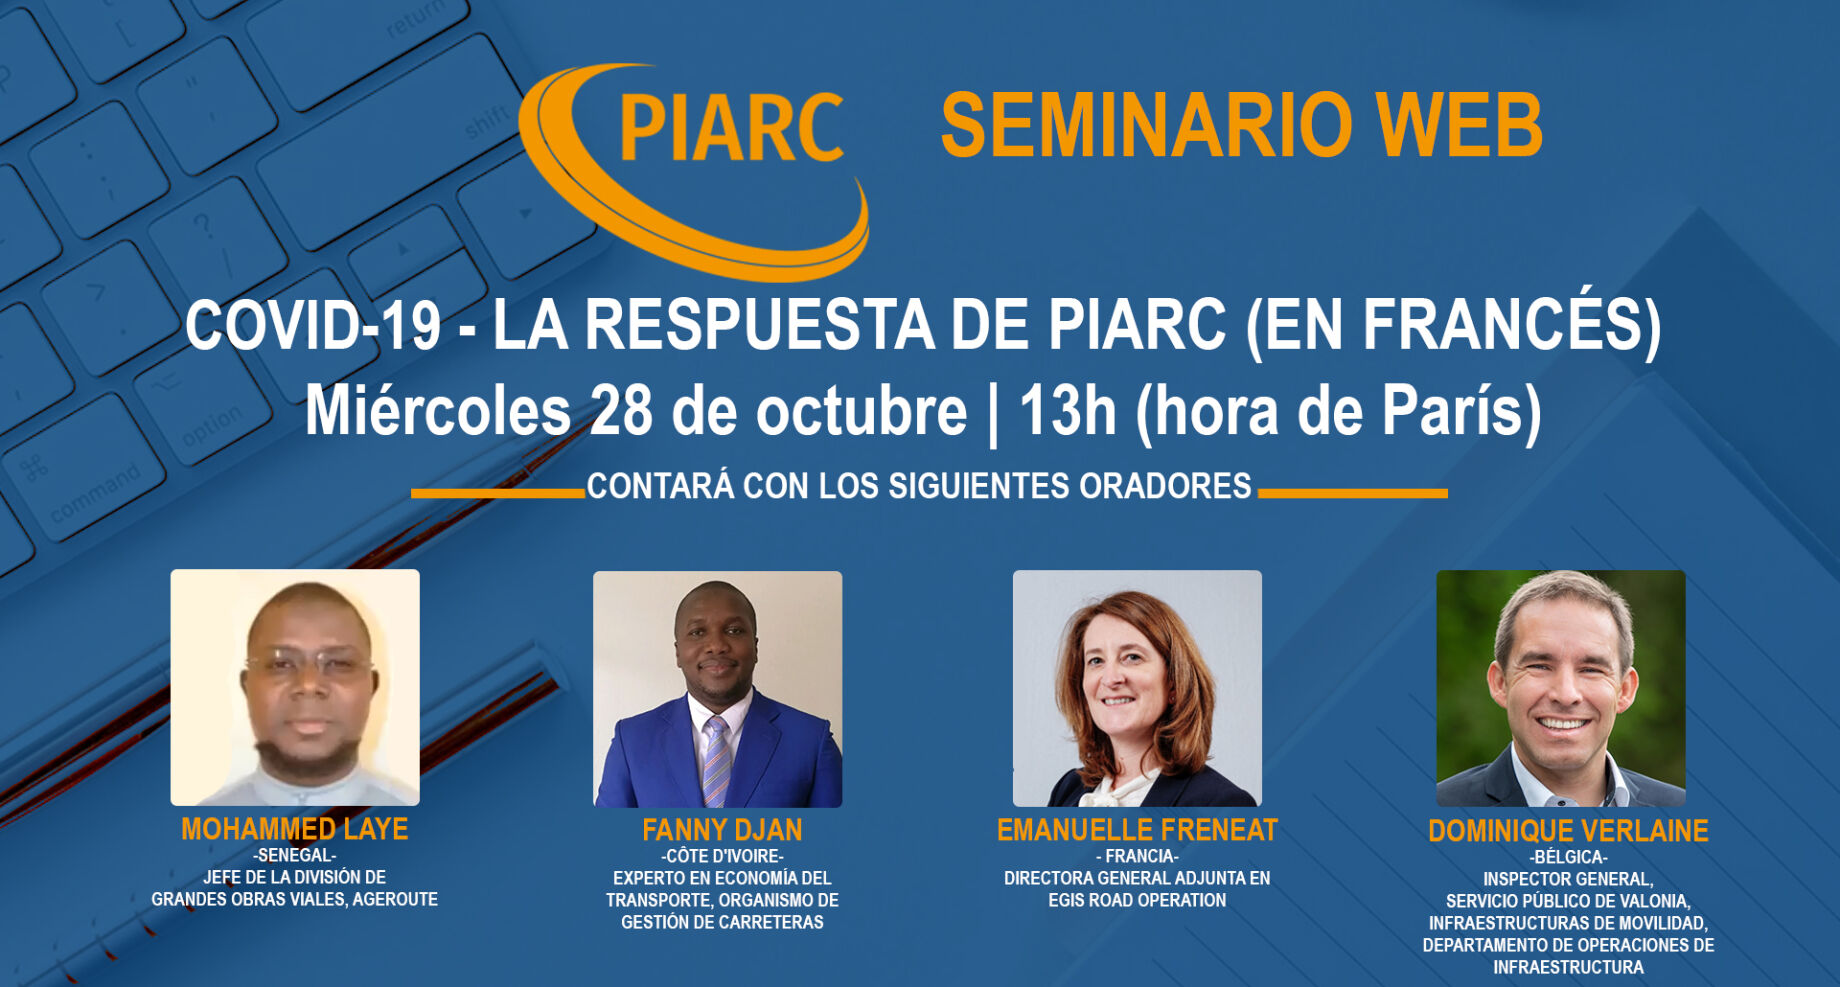 ¿Qué podemos aprender de la pandemia en curso y qué viene después? Únase al próximo seminario web de PIARC (en francés) y descubra más!